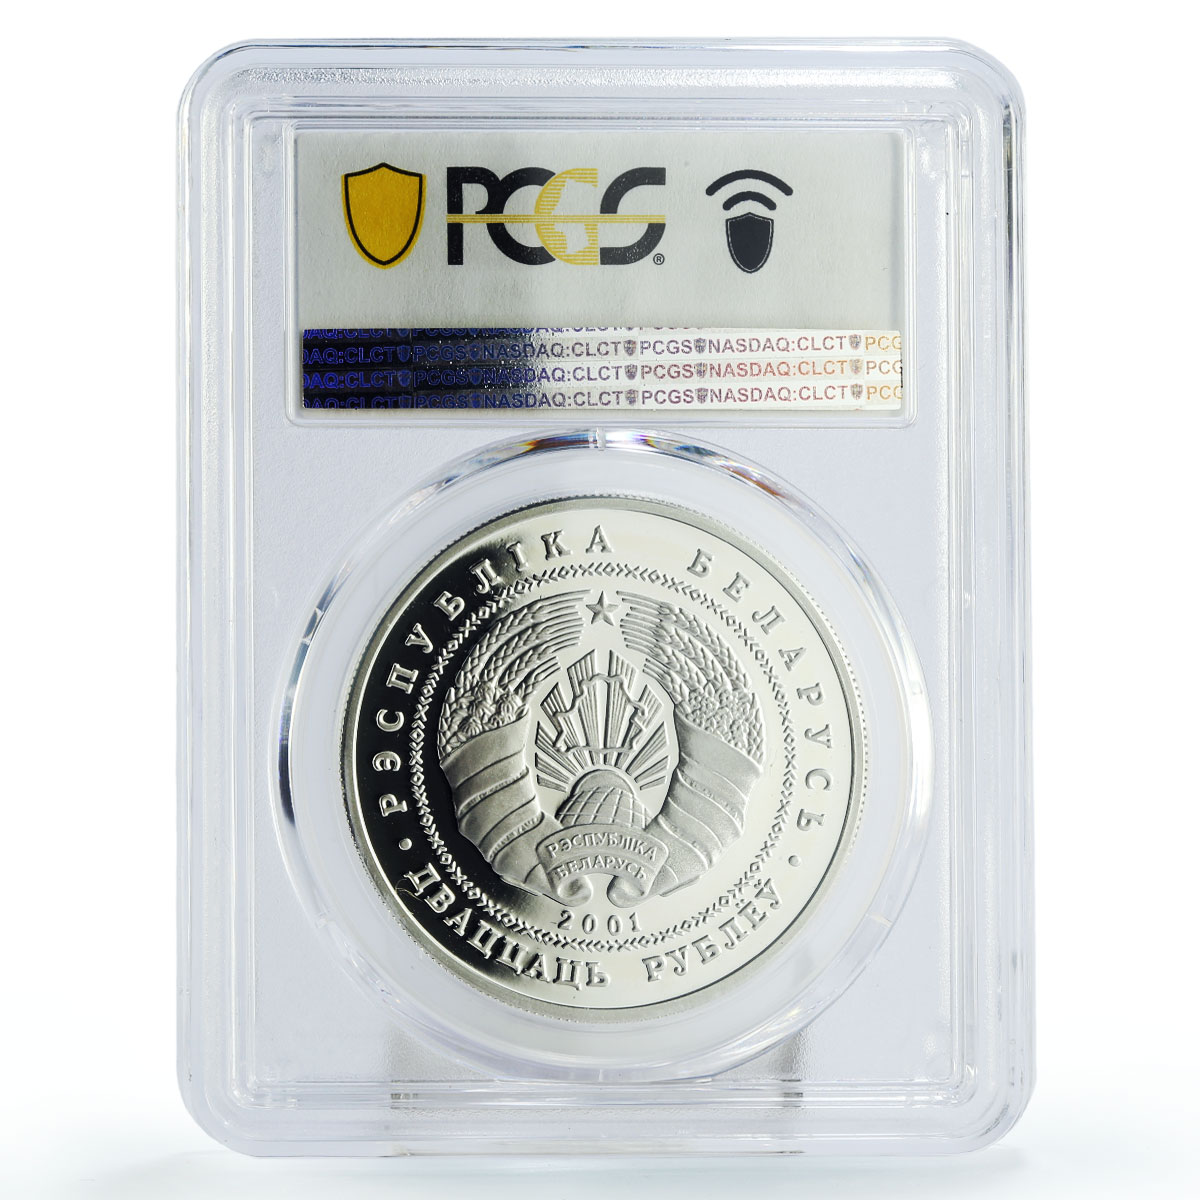 Belarus 20 rubles Belovezhskaya Puscha Wildlife Bison PR70 PCGS silver coin 2001